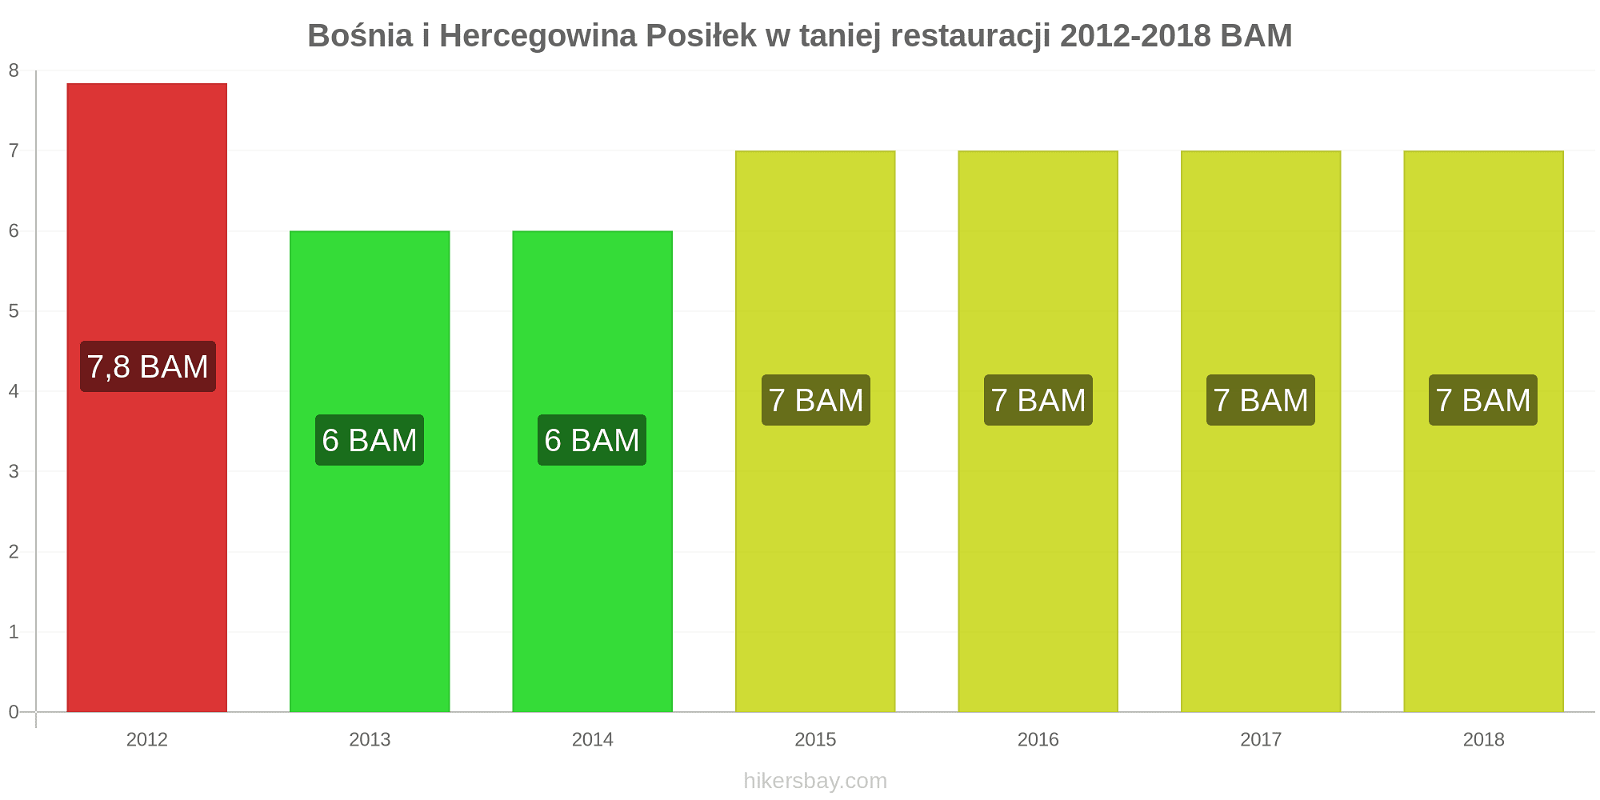 Bośnia i Hercegowina zmiany cen Posiłek w taniej restauracji hikersbay.com